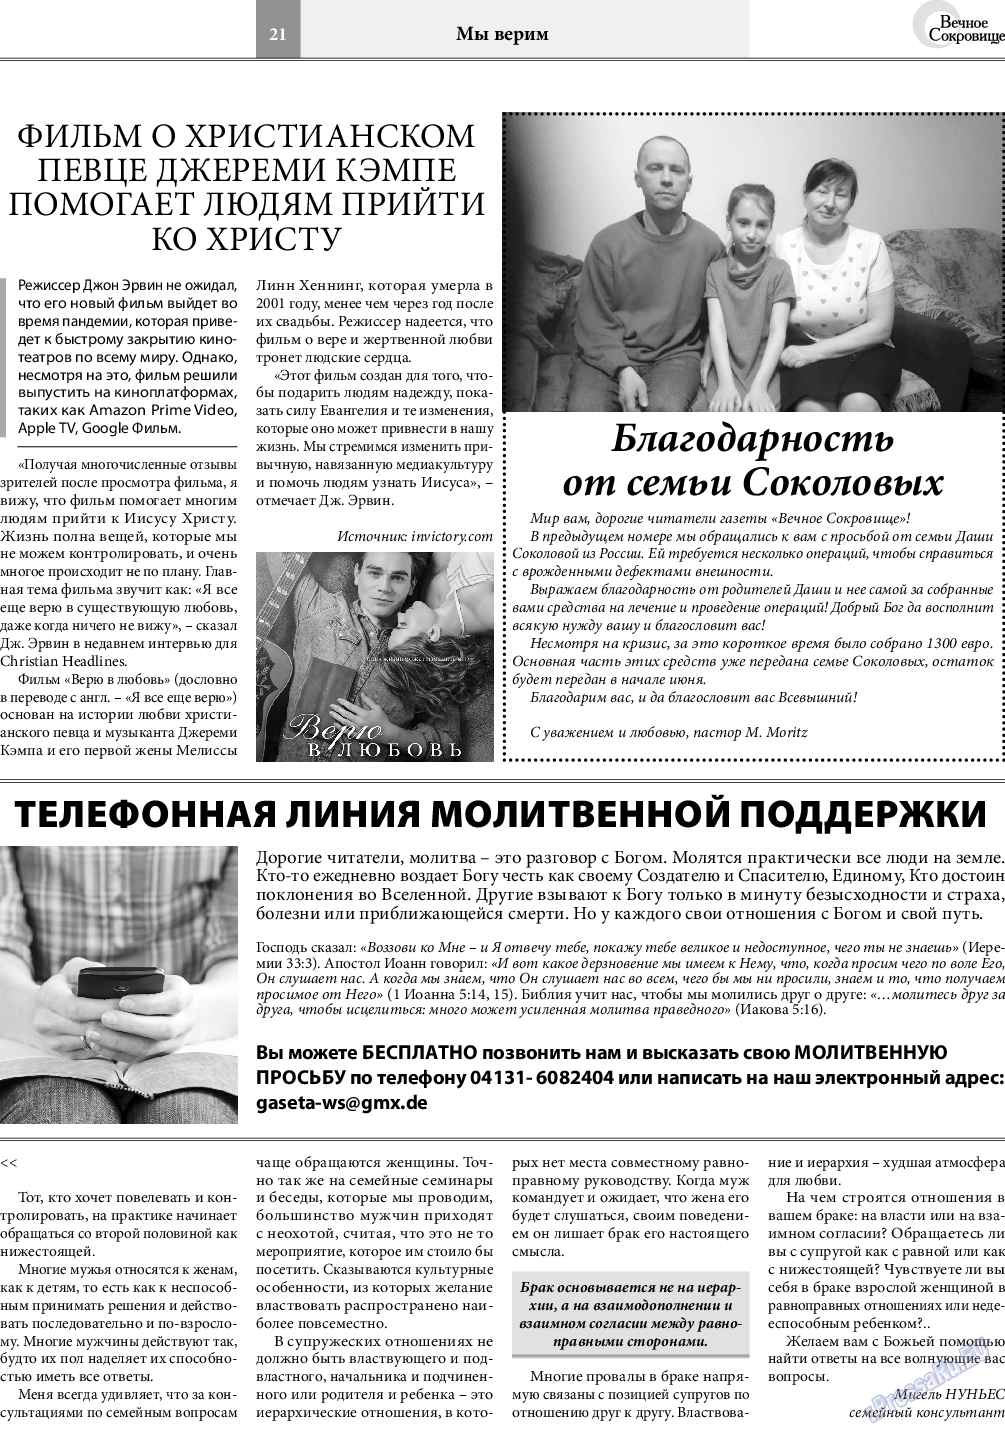 Вечное сокровище, газета. 2020 №3 стр.21